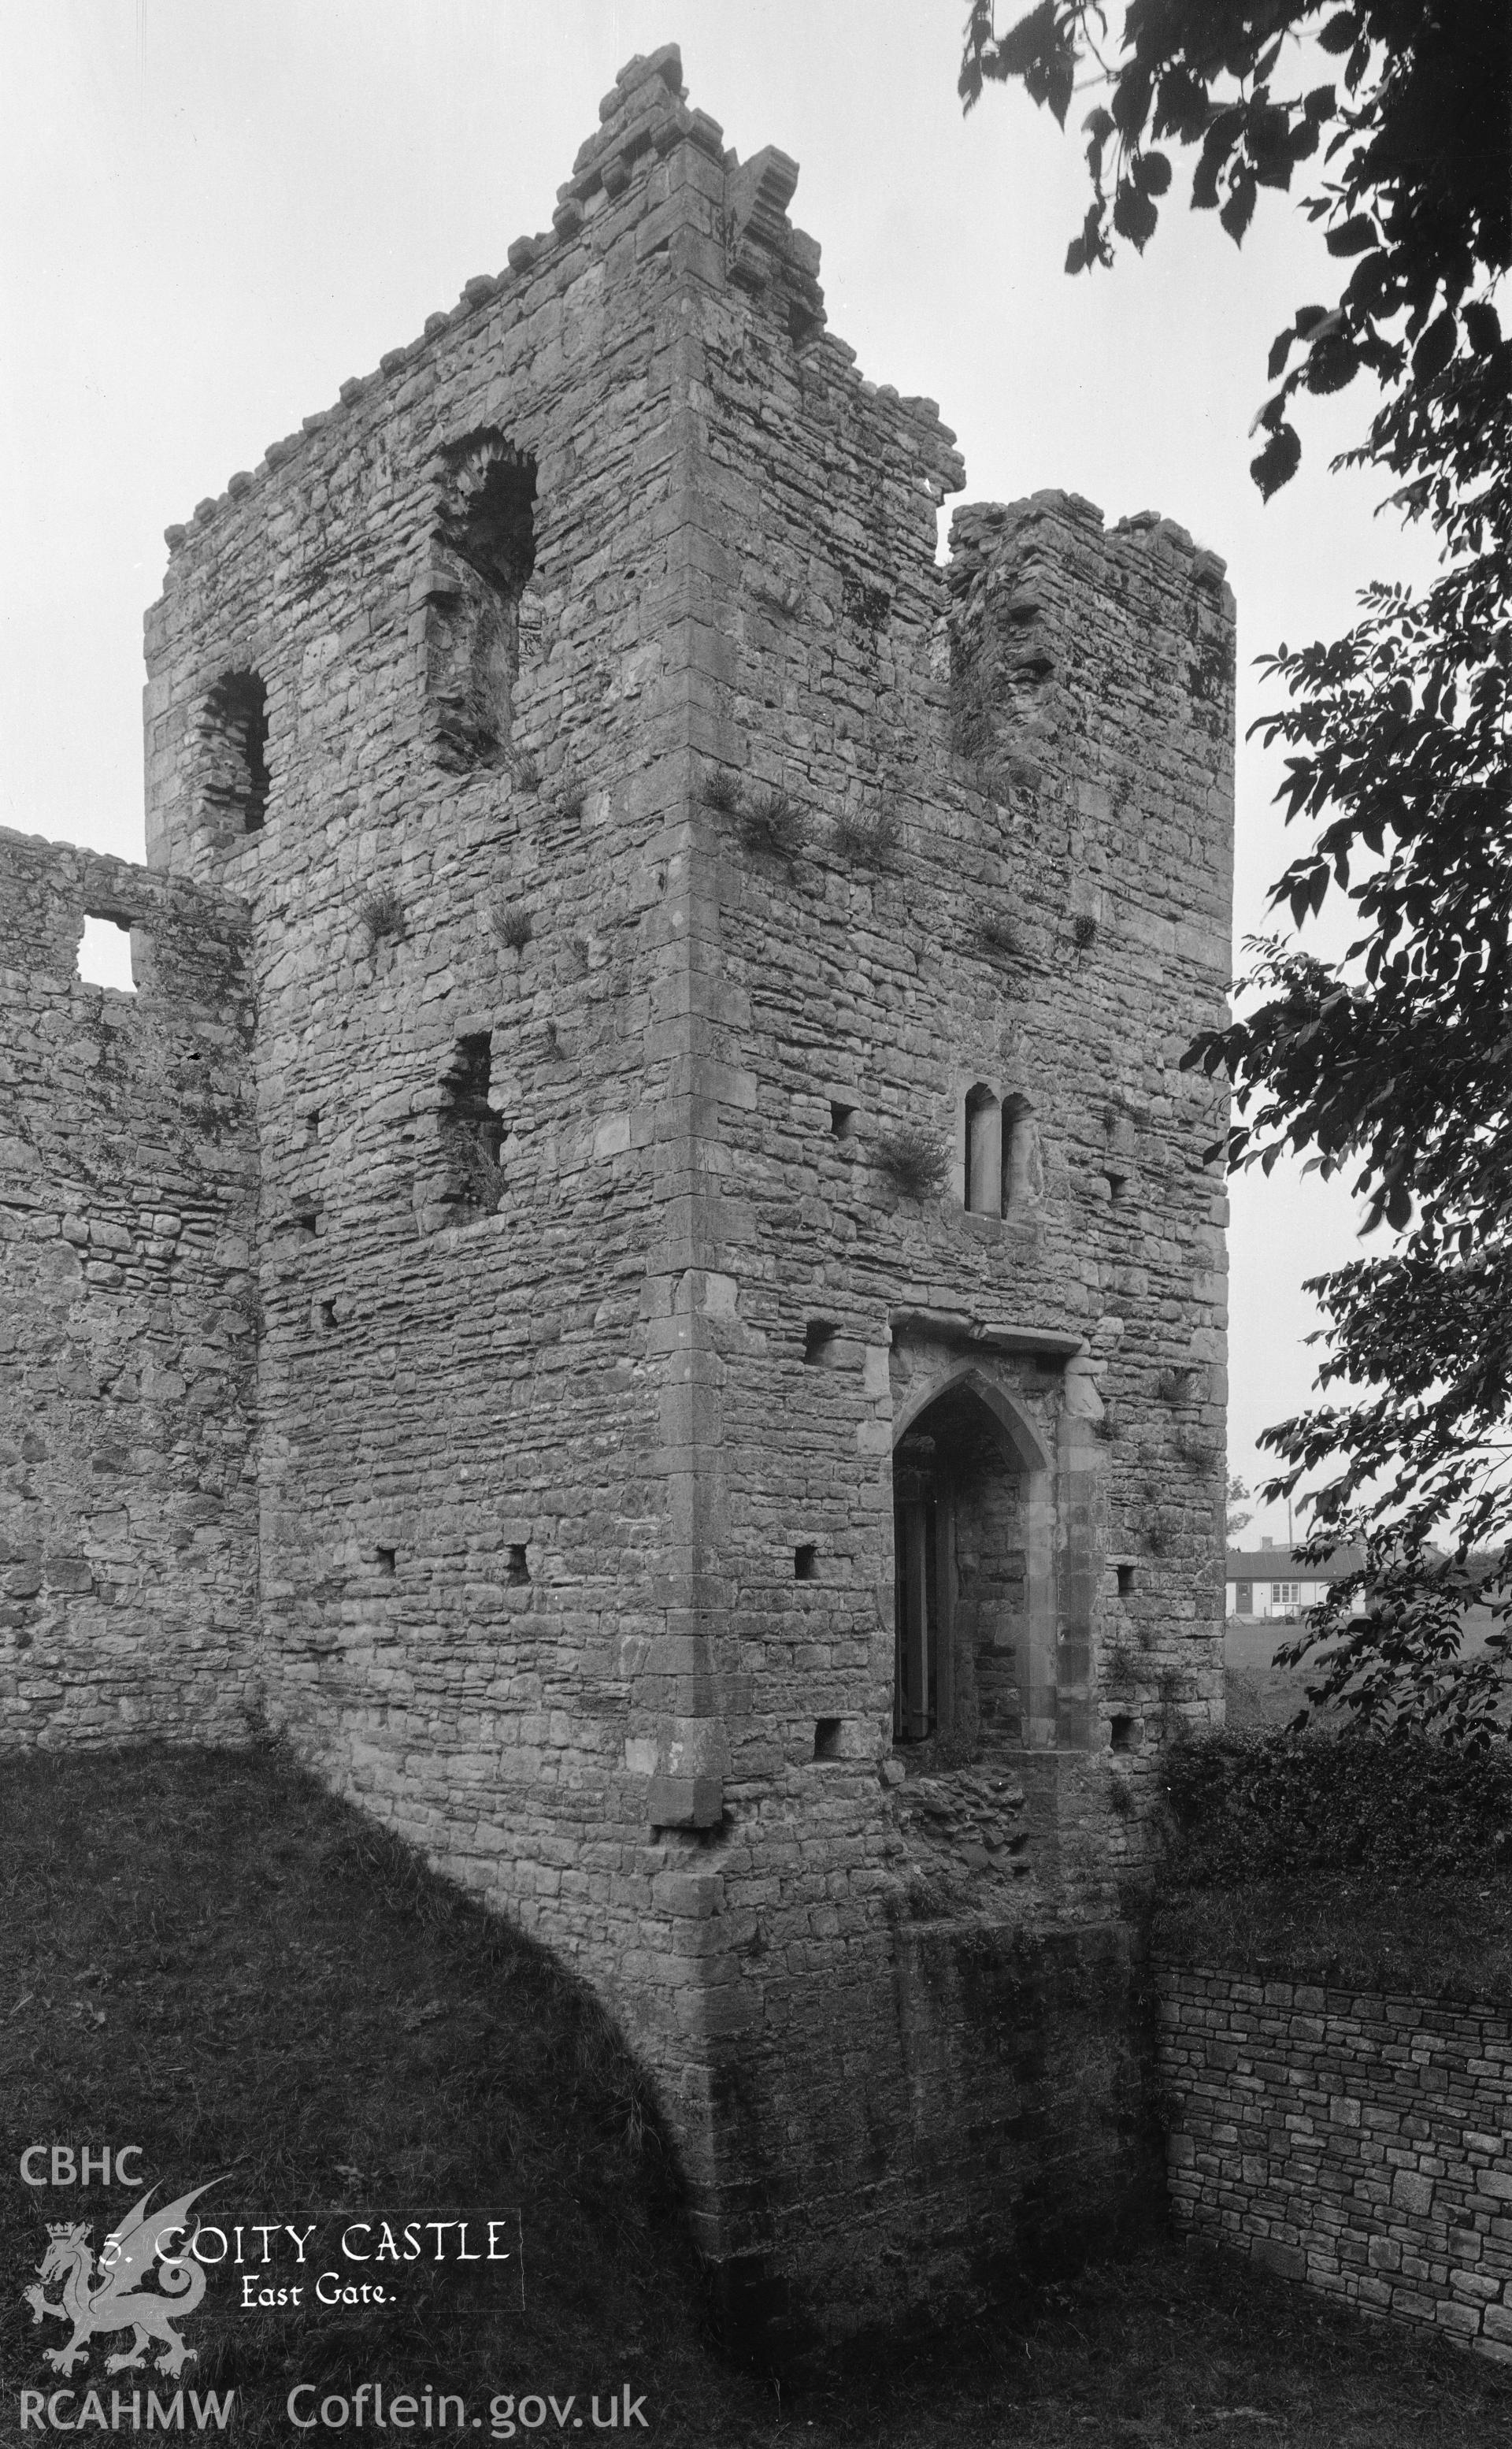 D.O.E photograph of Coity Castle.